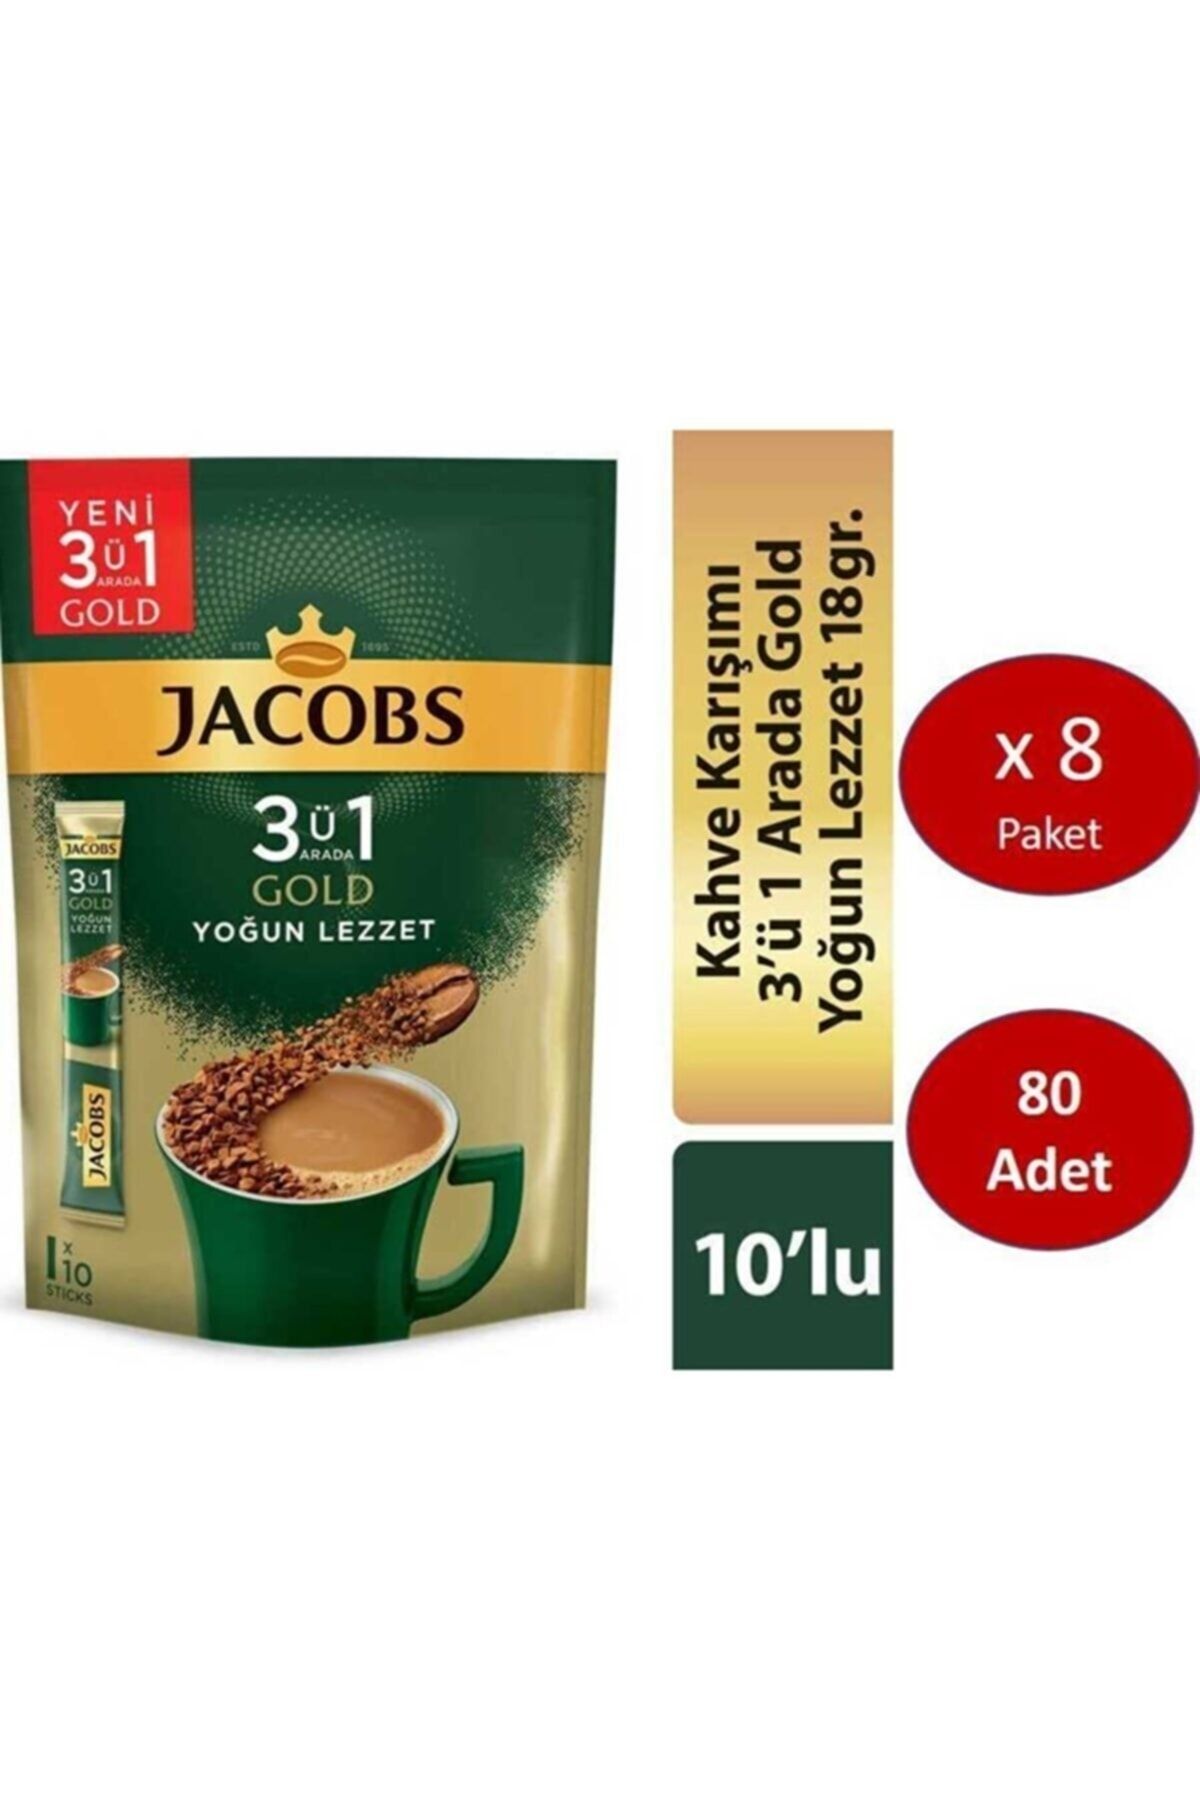 Jacobs 3ü1 Arada Gold Kahve Karışımı Yoğun Lezzet 80 Adet (10 X 8 Paket)